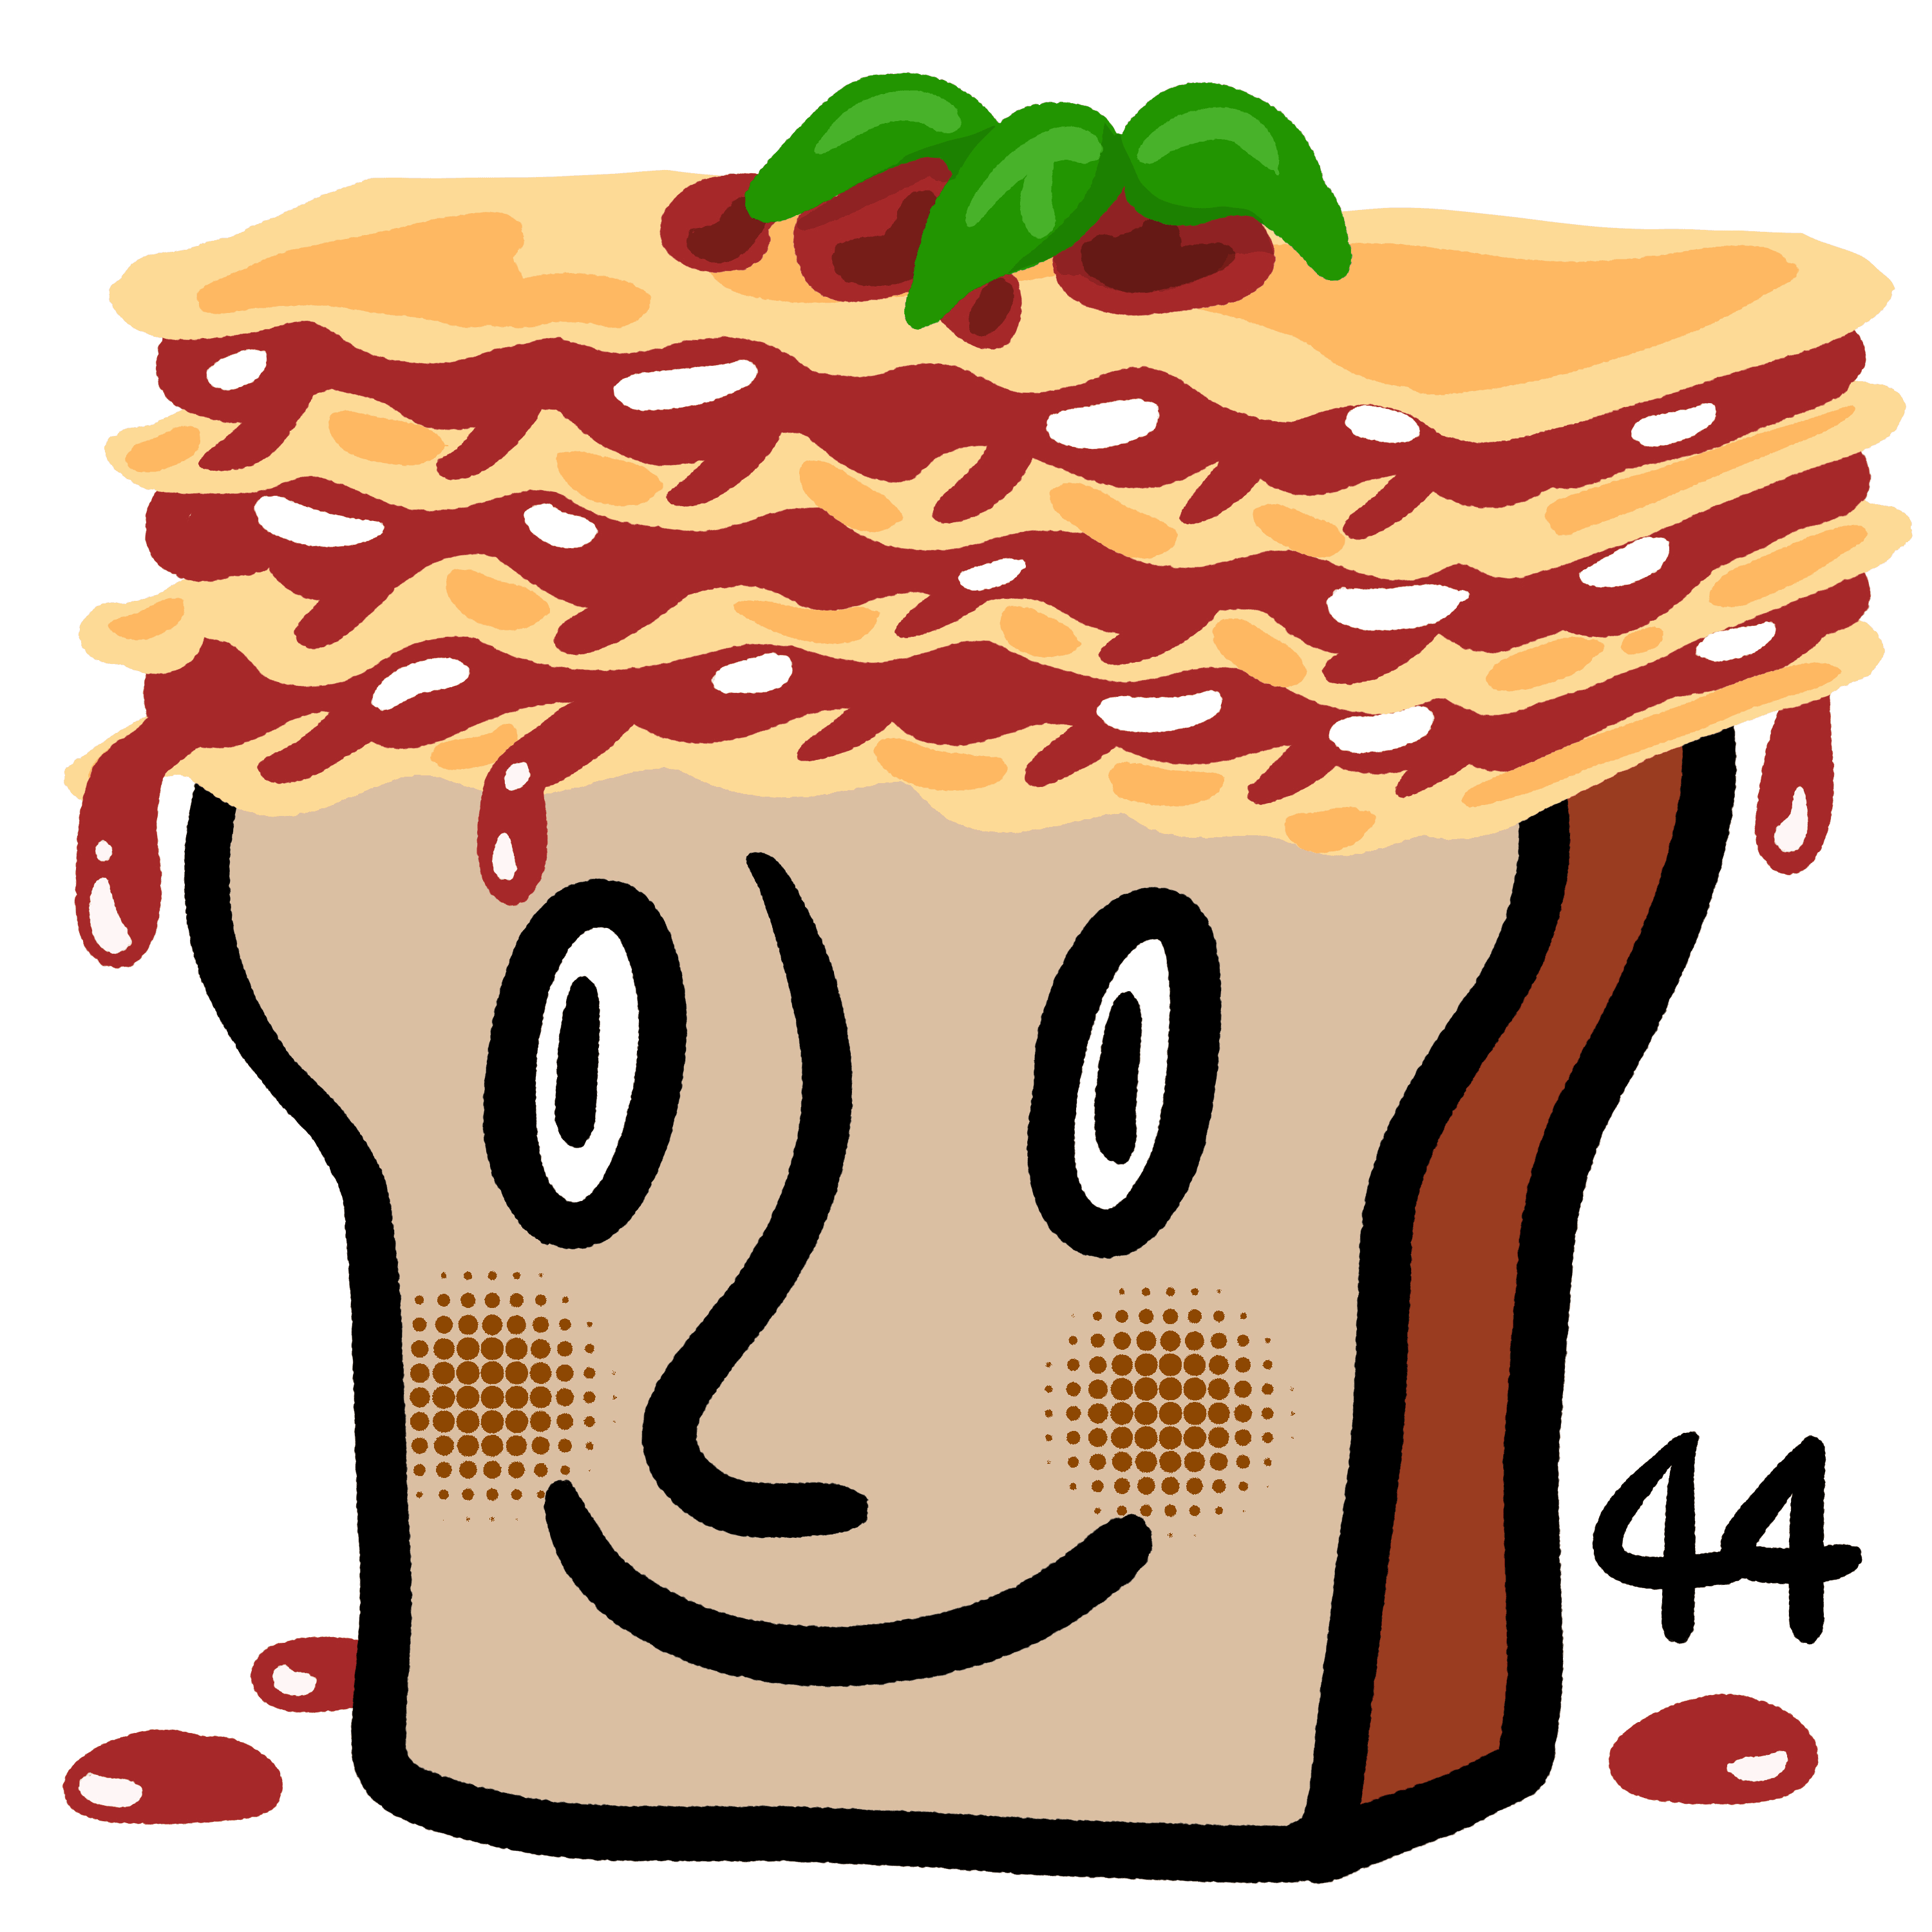 Bread and lasagna